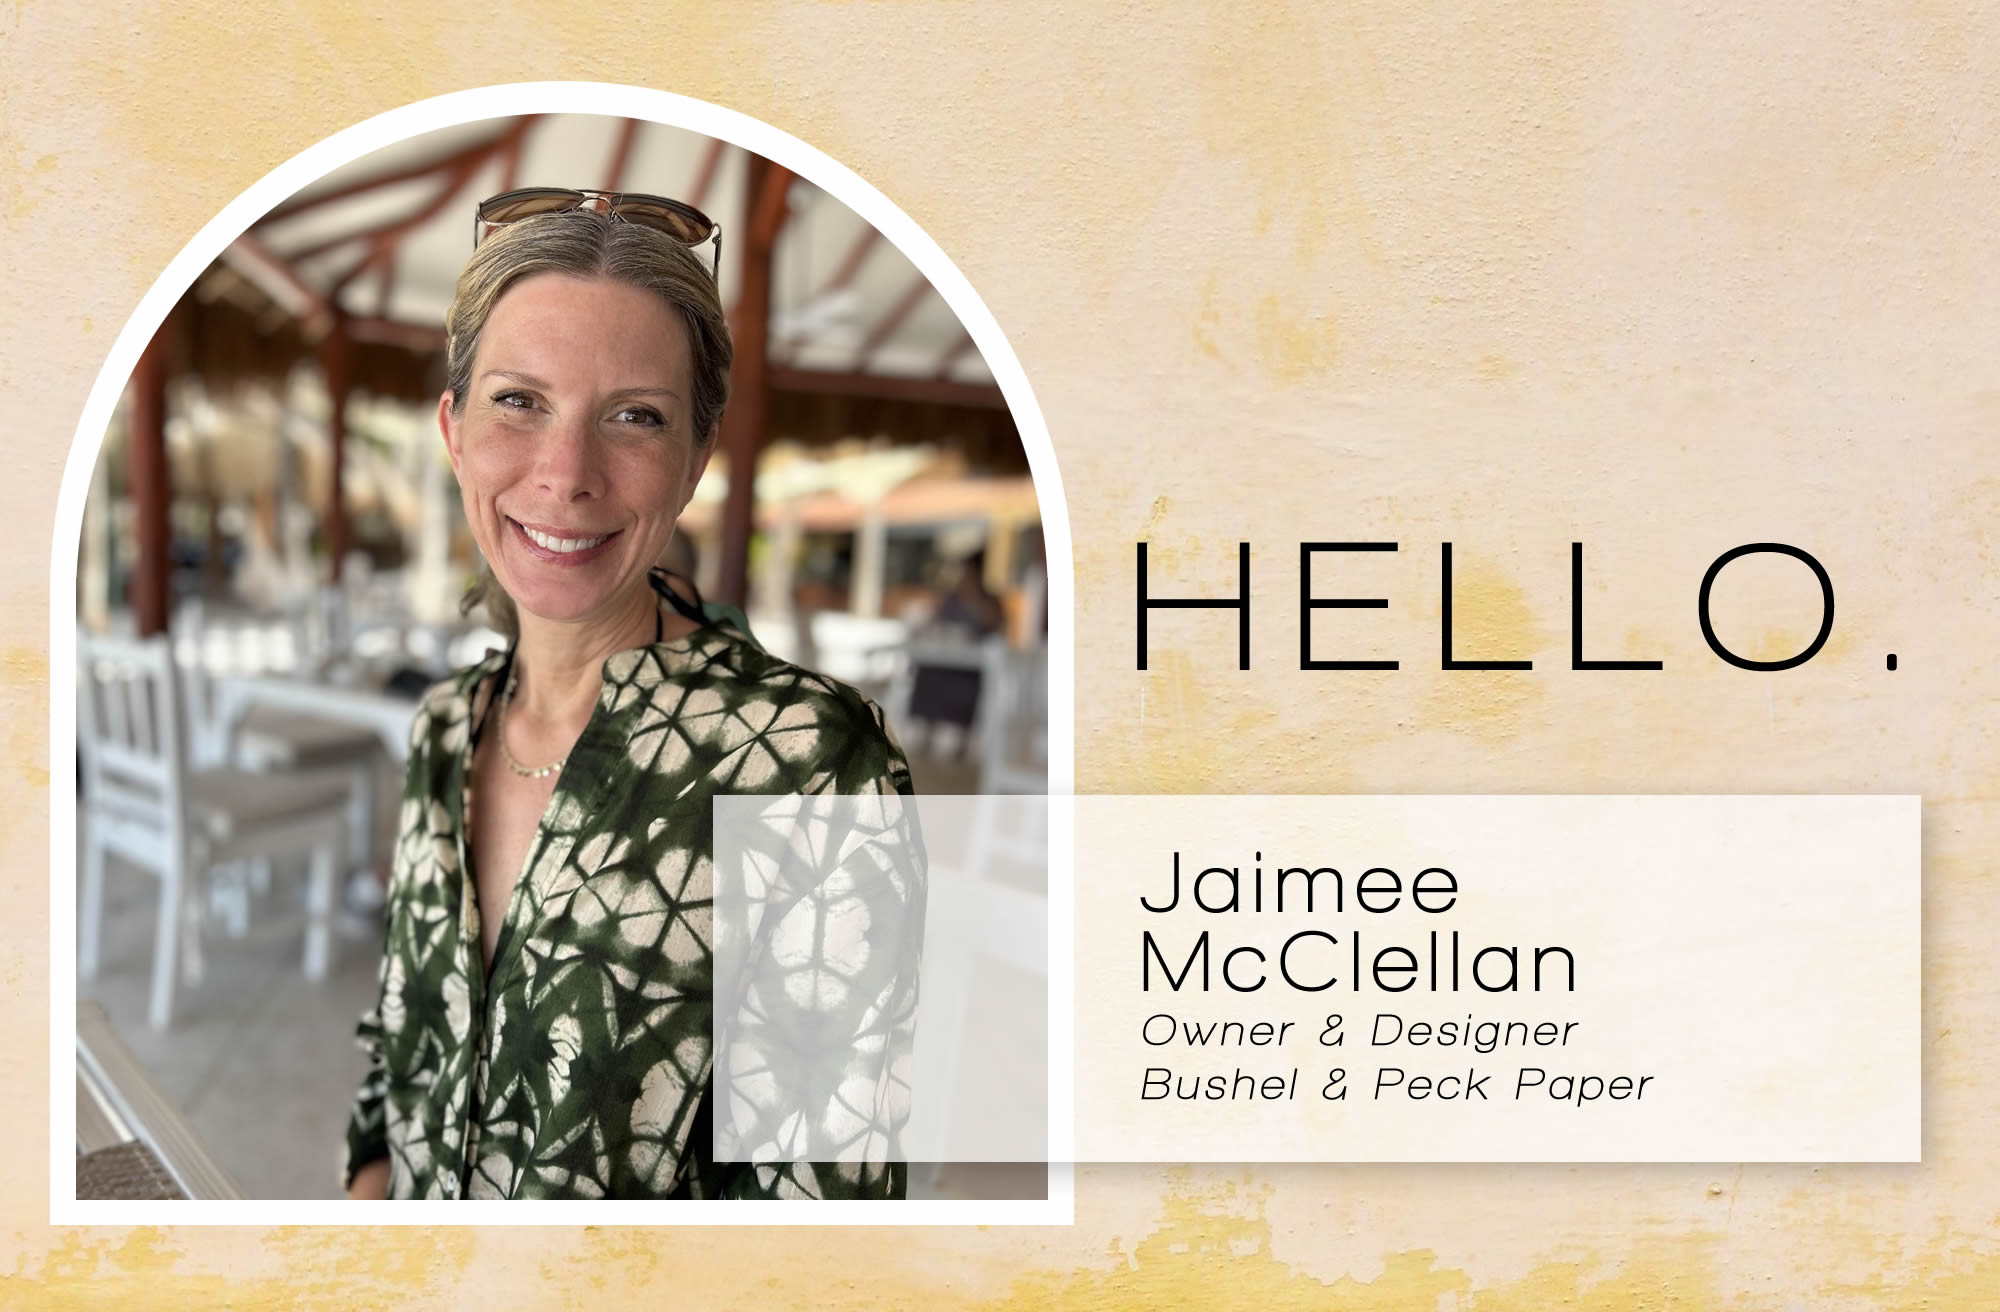 Jaimee McClellan - owner & designer at Bushel & Peck Paper